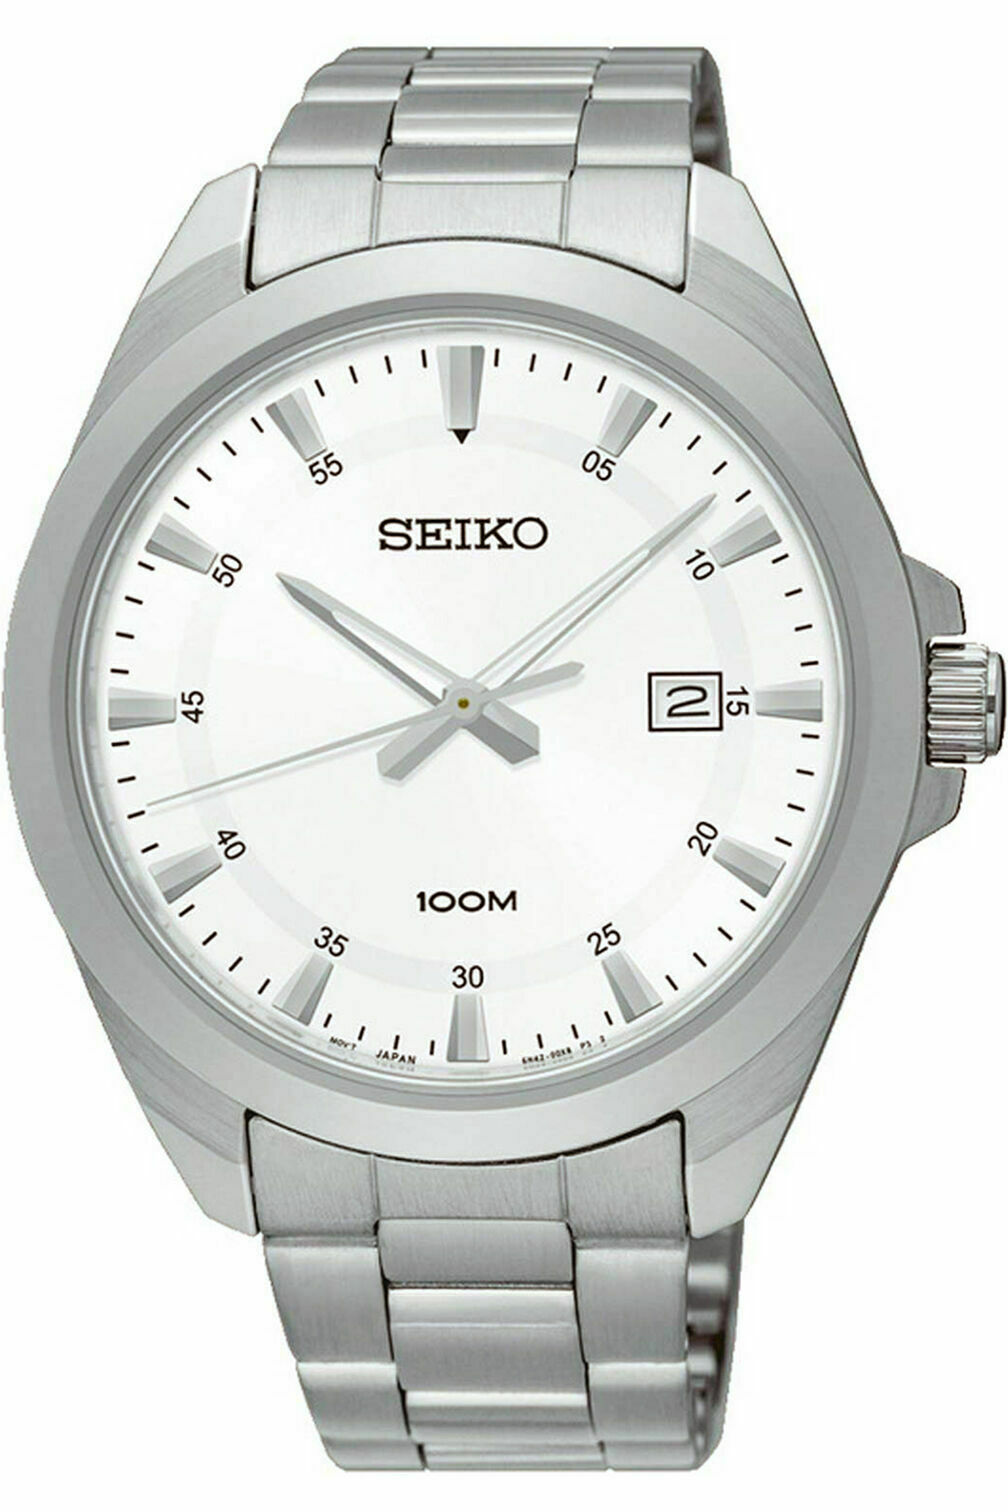 Seiko Classic (SUR205) Market Price | WatchCharts